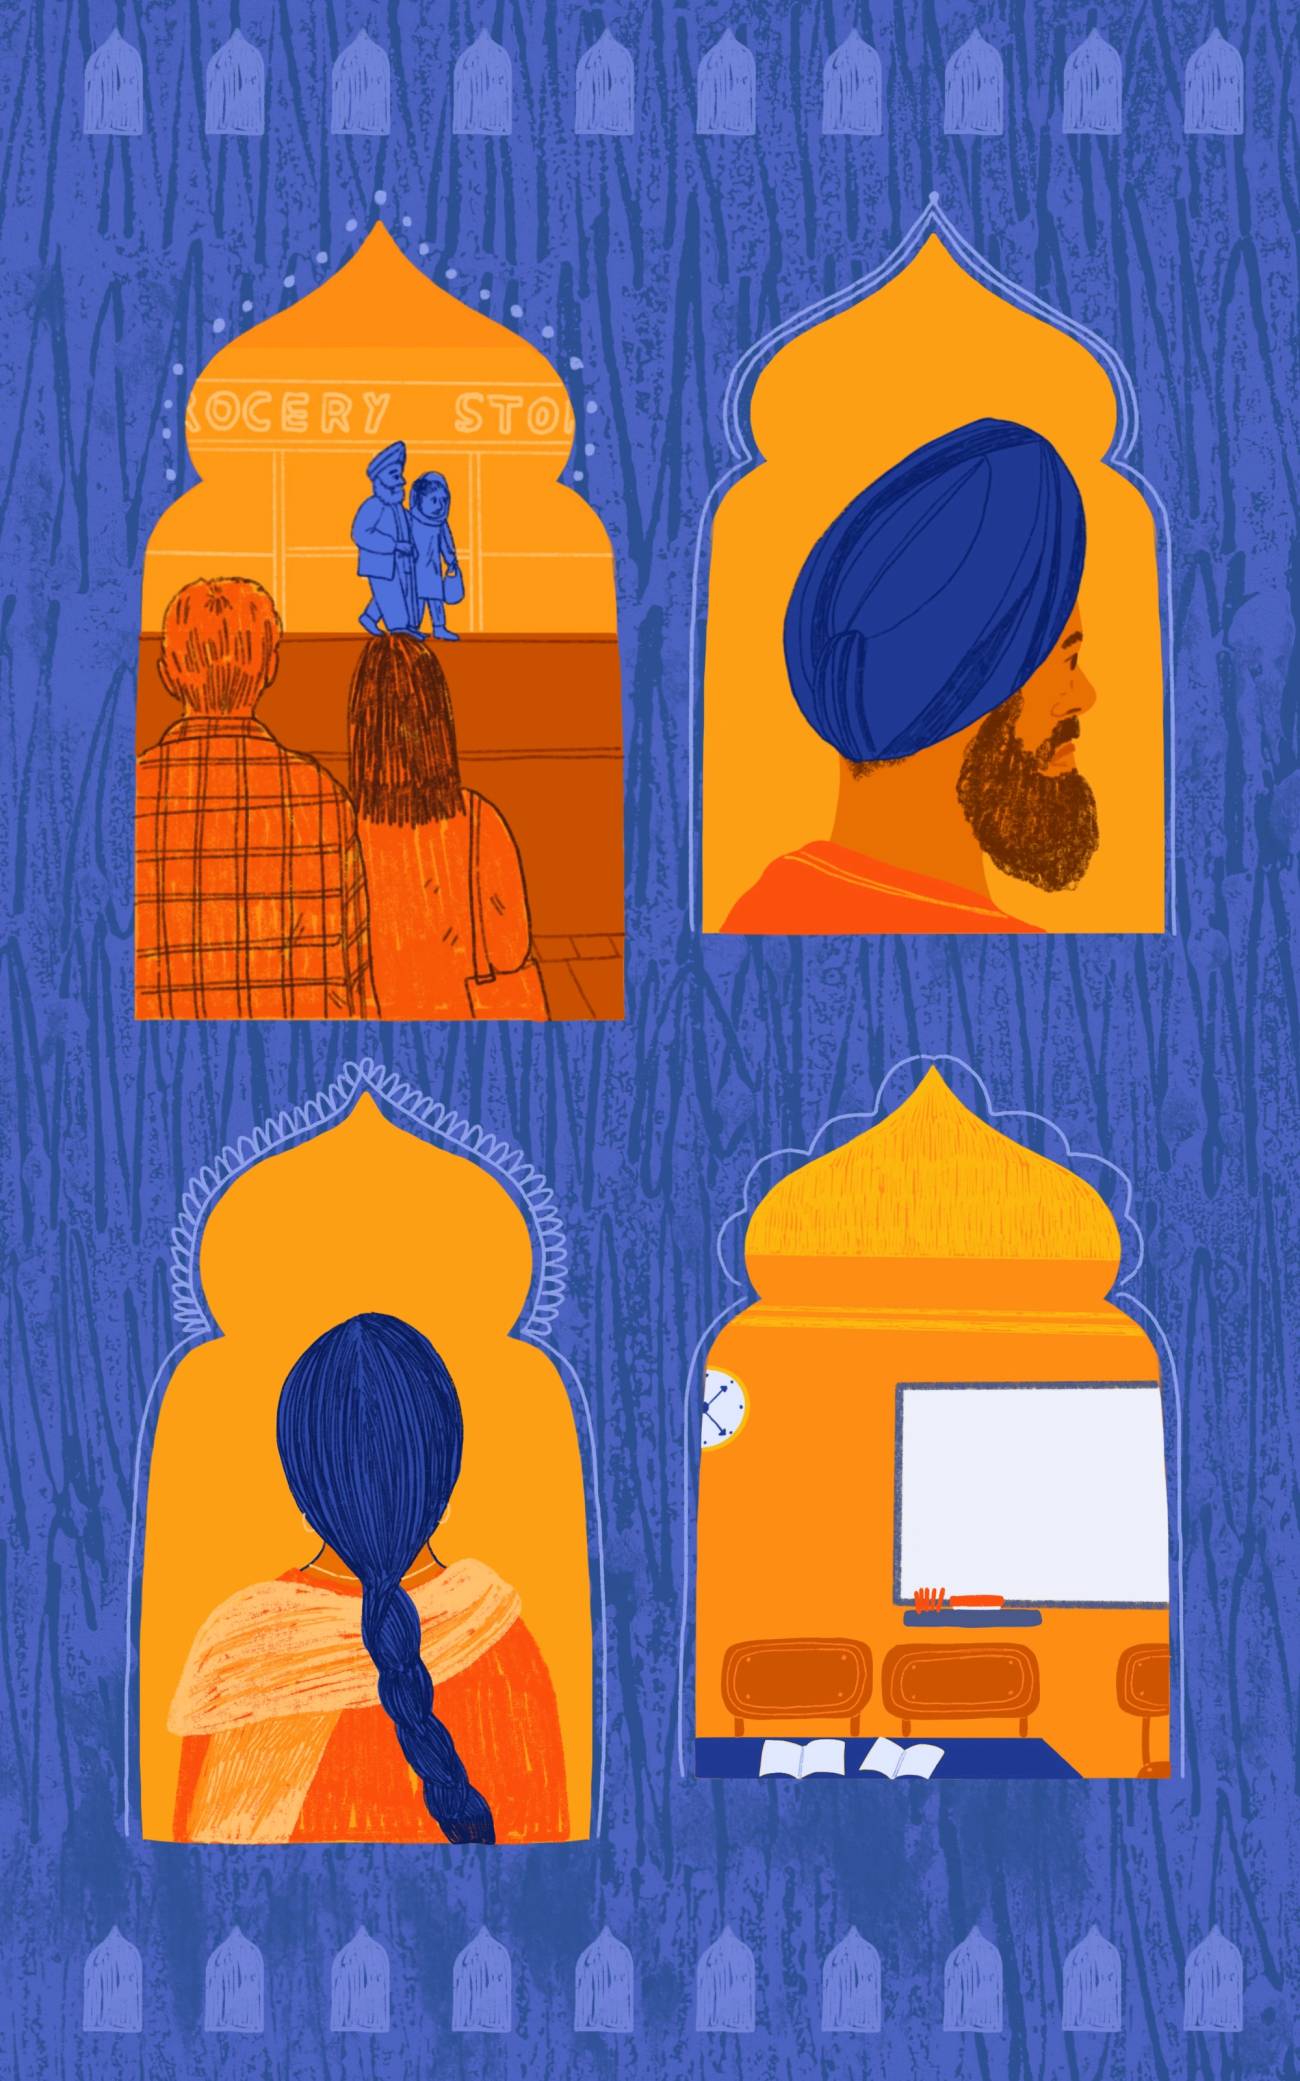 Spiritual Sikh Names Starting With B